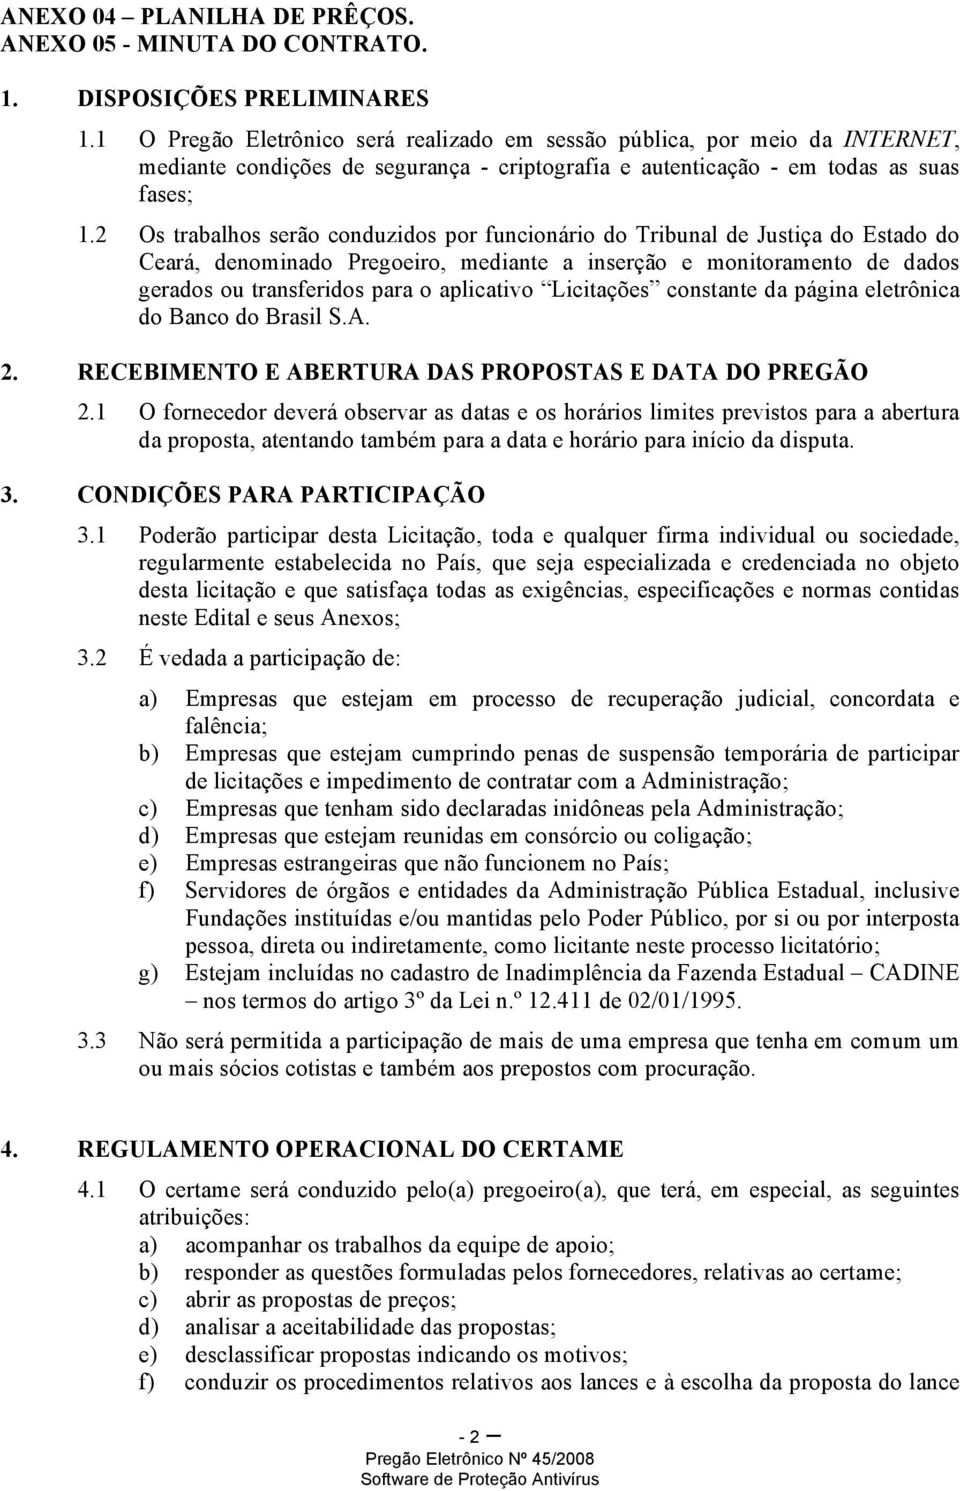 2 Os trabalhos serão conduzidos por funcionário do Tribunal de Justiça do Estado do Ceará, denominado Pregoeiro, mediante a inserção e monitoramento de dados gerados ou transferidos para o aplicativo